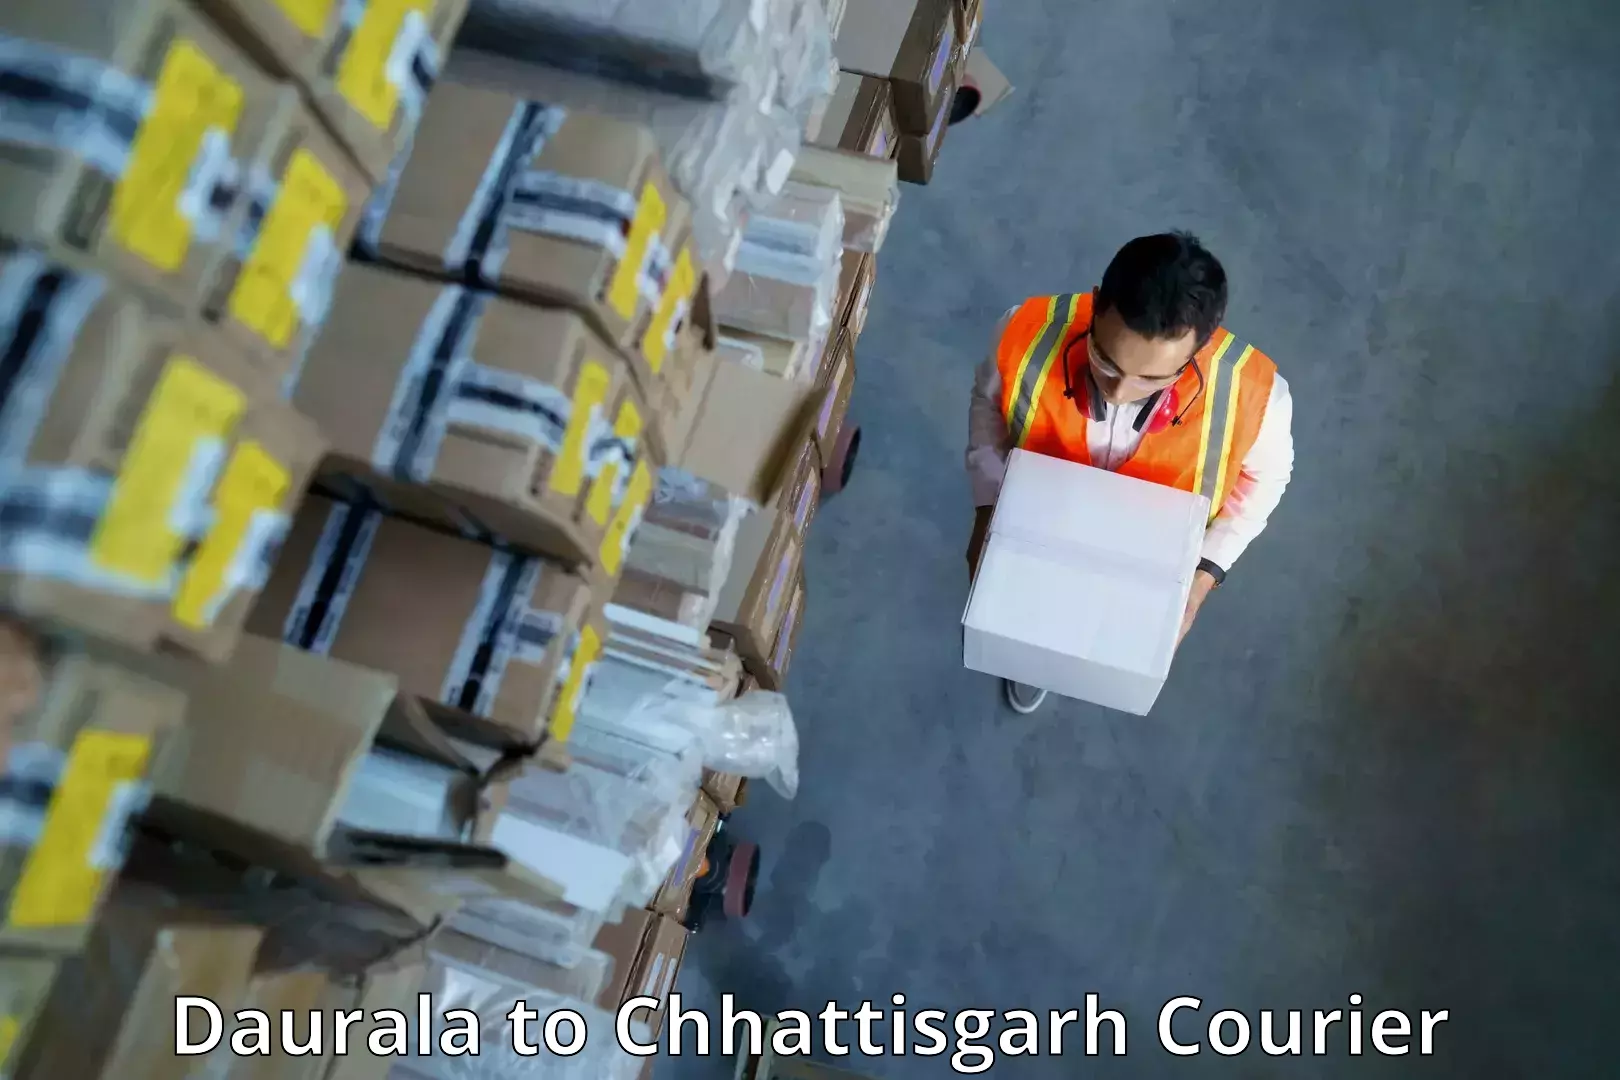 Weekend courier service Daurala to Bijapur Chhattisgarh